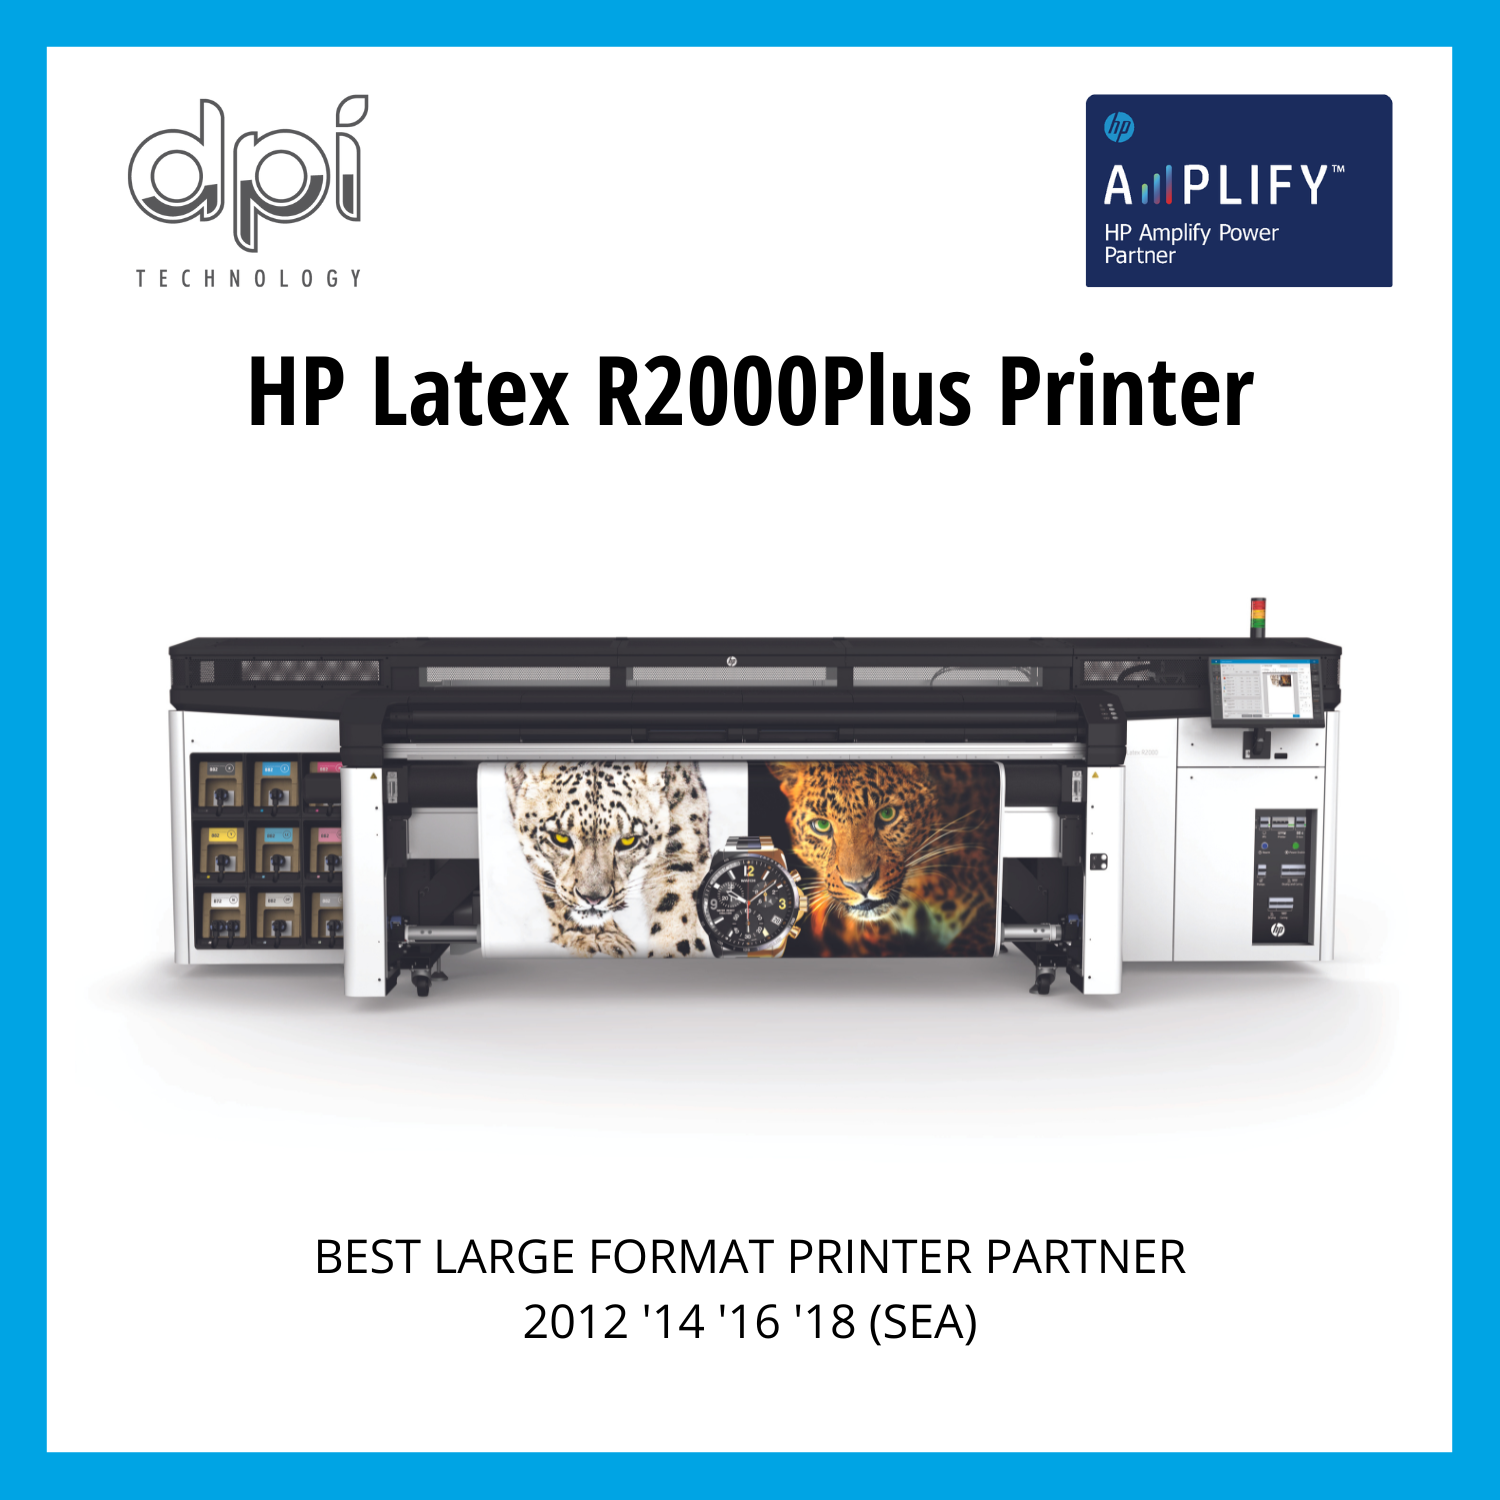 HP Latex R2000 Plus Printer